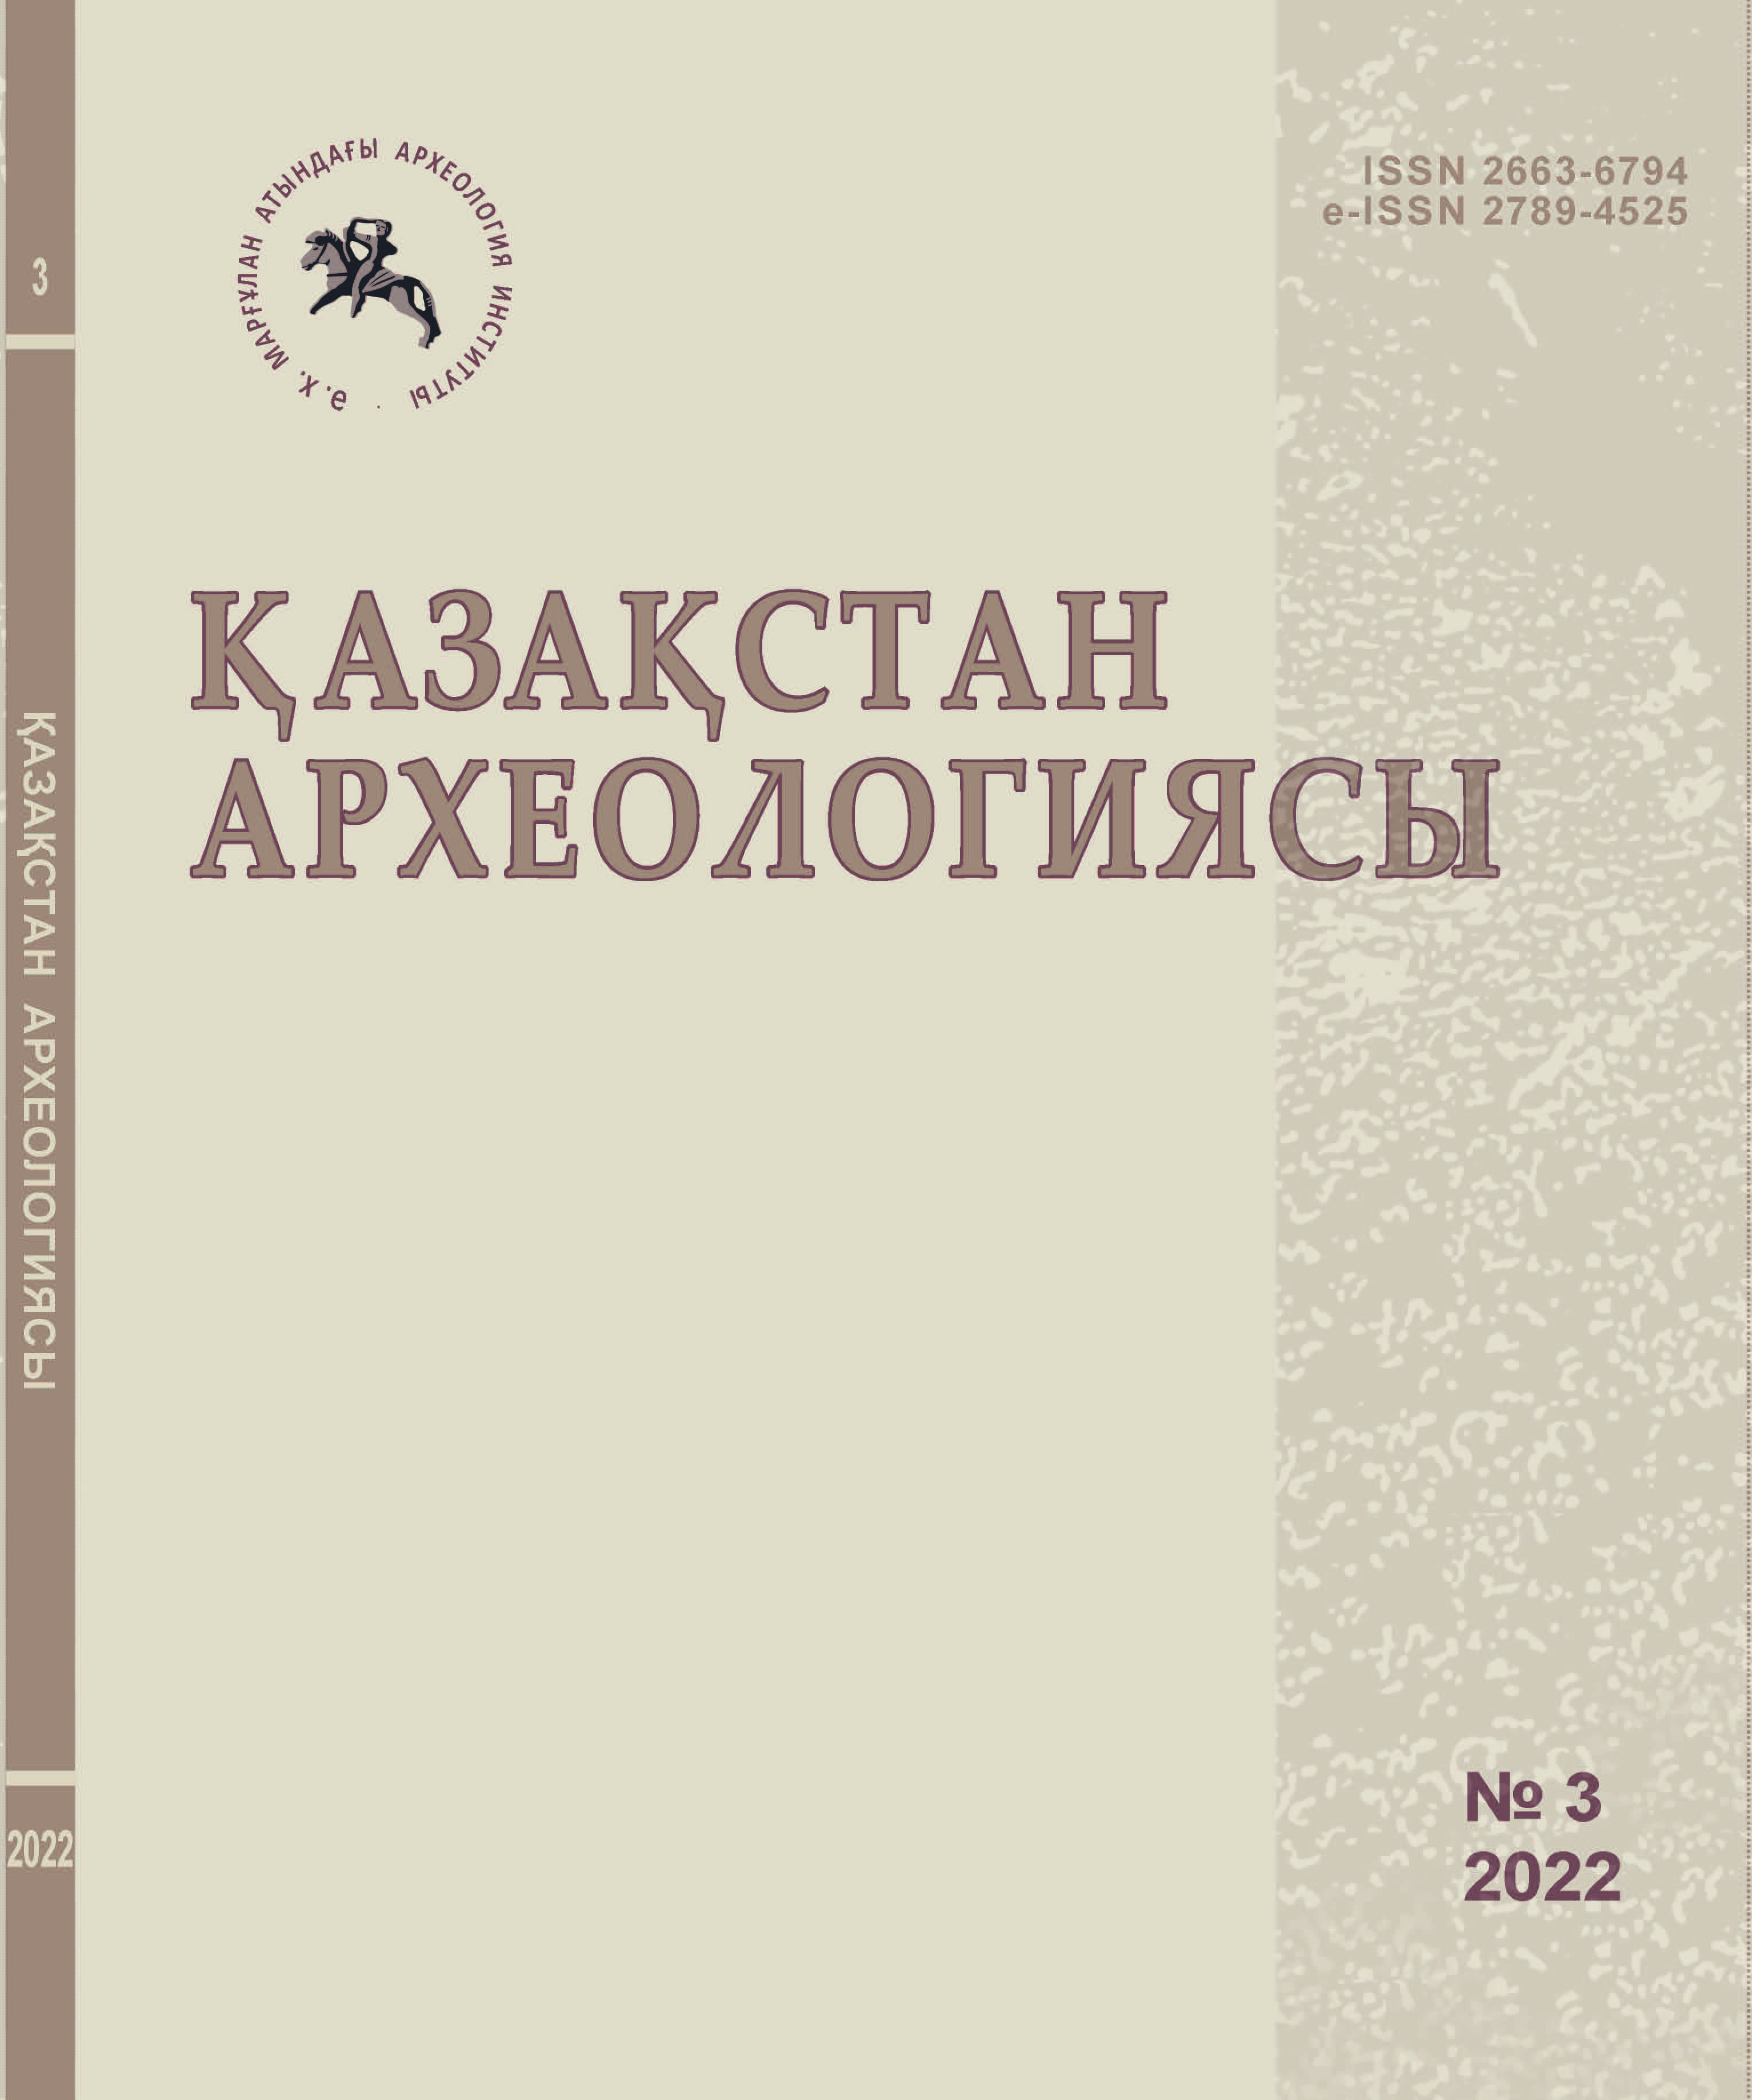 					Показать № 3 (17) (2022): Археология Казахстана
				